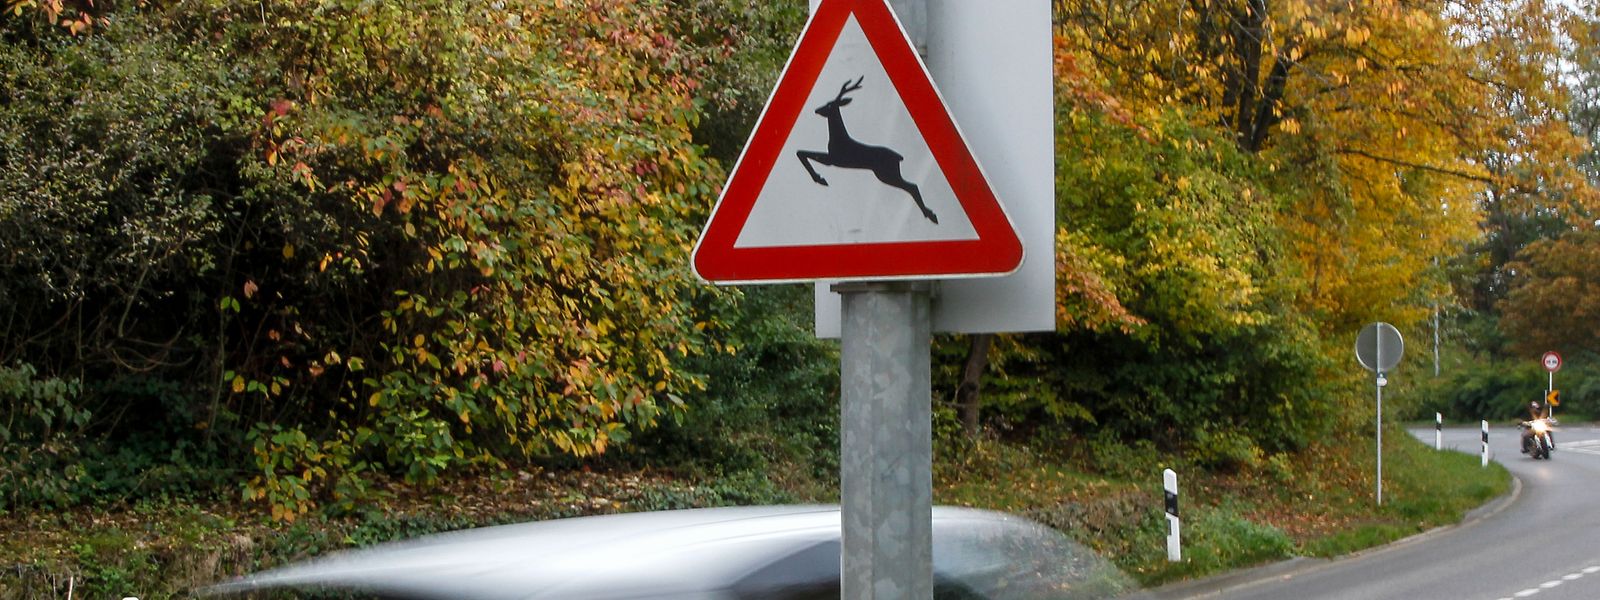 Wer das Gefahrenschild am Fahrbahnrand sieht, sollte seine Fahrweise anpassen. Denn die Schilder werden bevorzugt an Orten angebracht, an denen es bereits zu Wildunfällen gekommen ist.